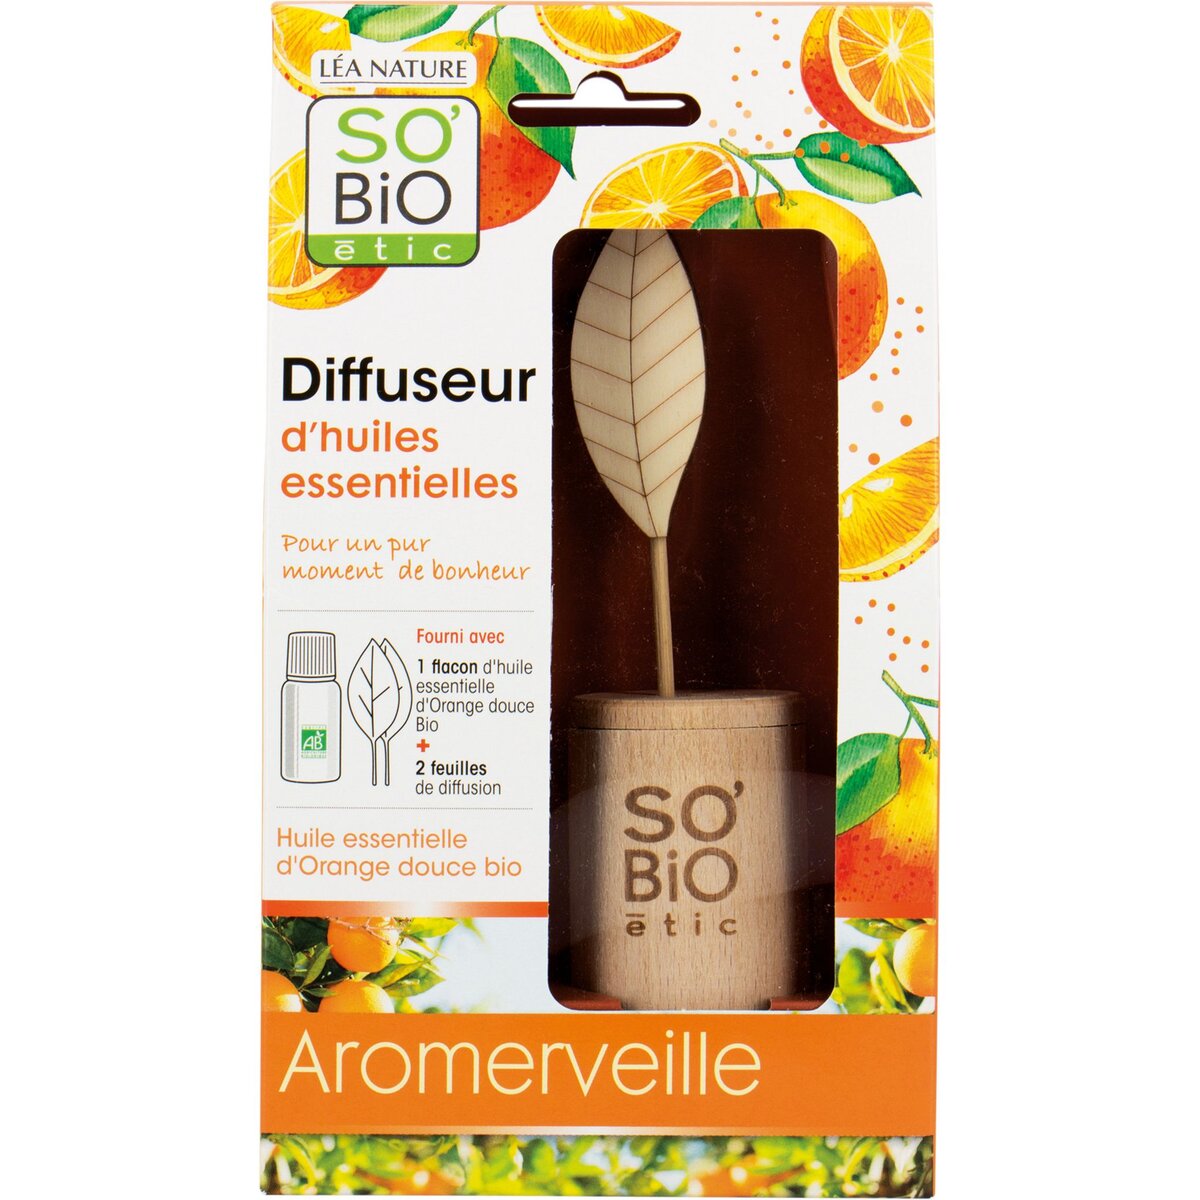 SO BIO ÉTIC Diffuseur Bois Aromerveille à l'Huile Essentielle d'Orange Douce Bio